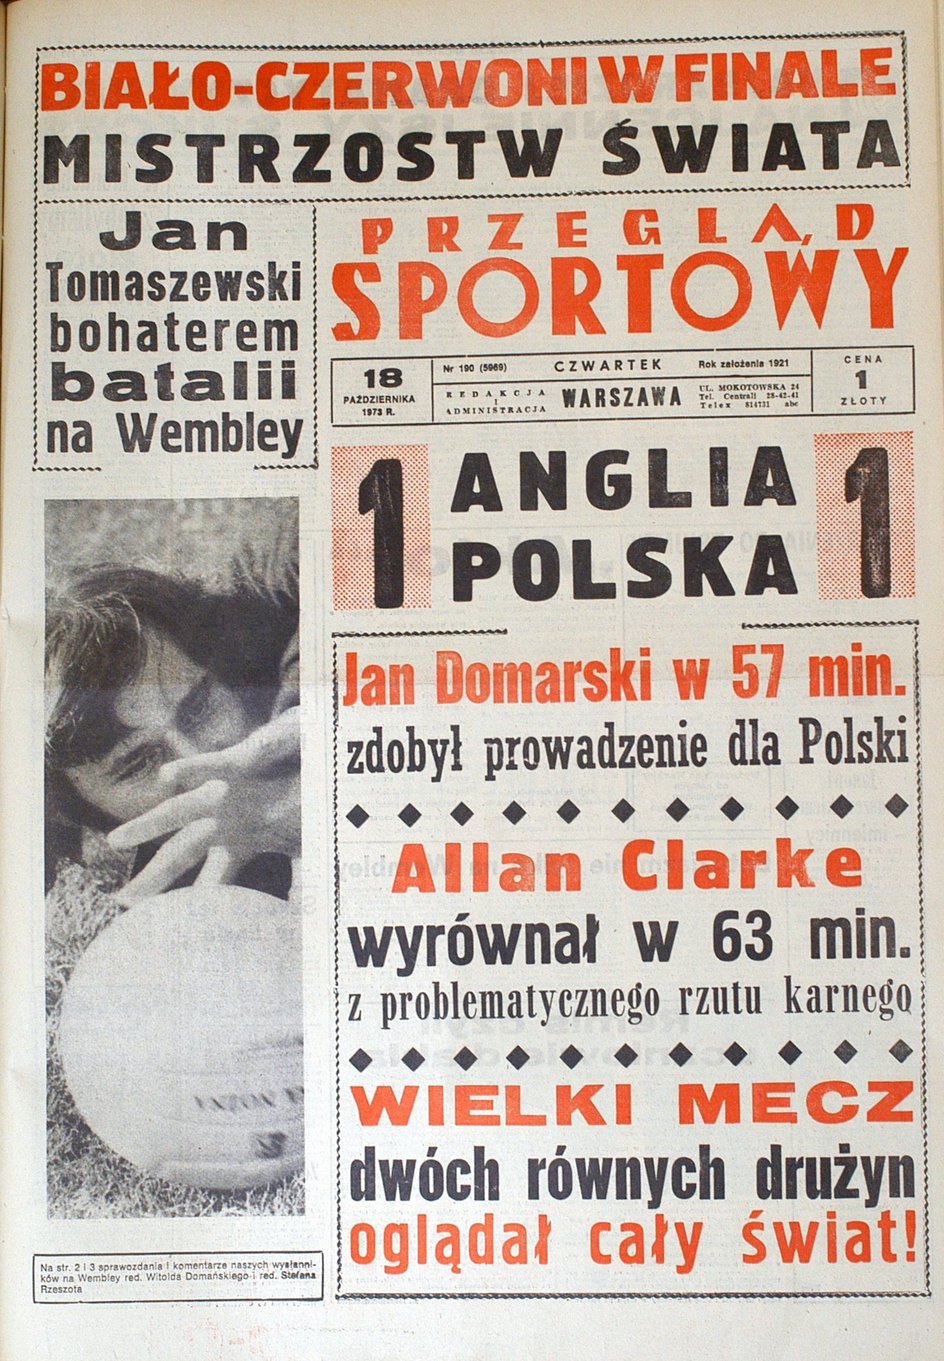 Okładka Przeglądu Sportowego z relacją z meczu Anglia - Polska